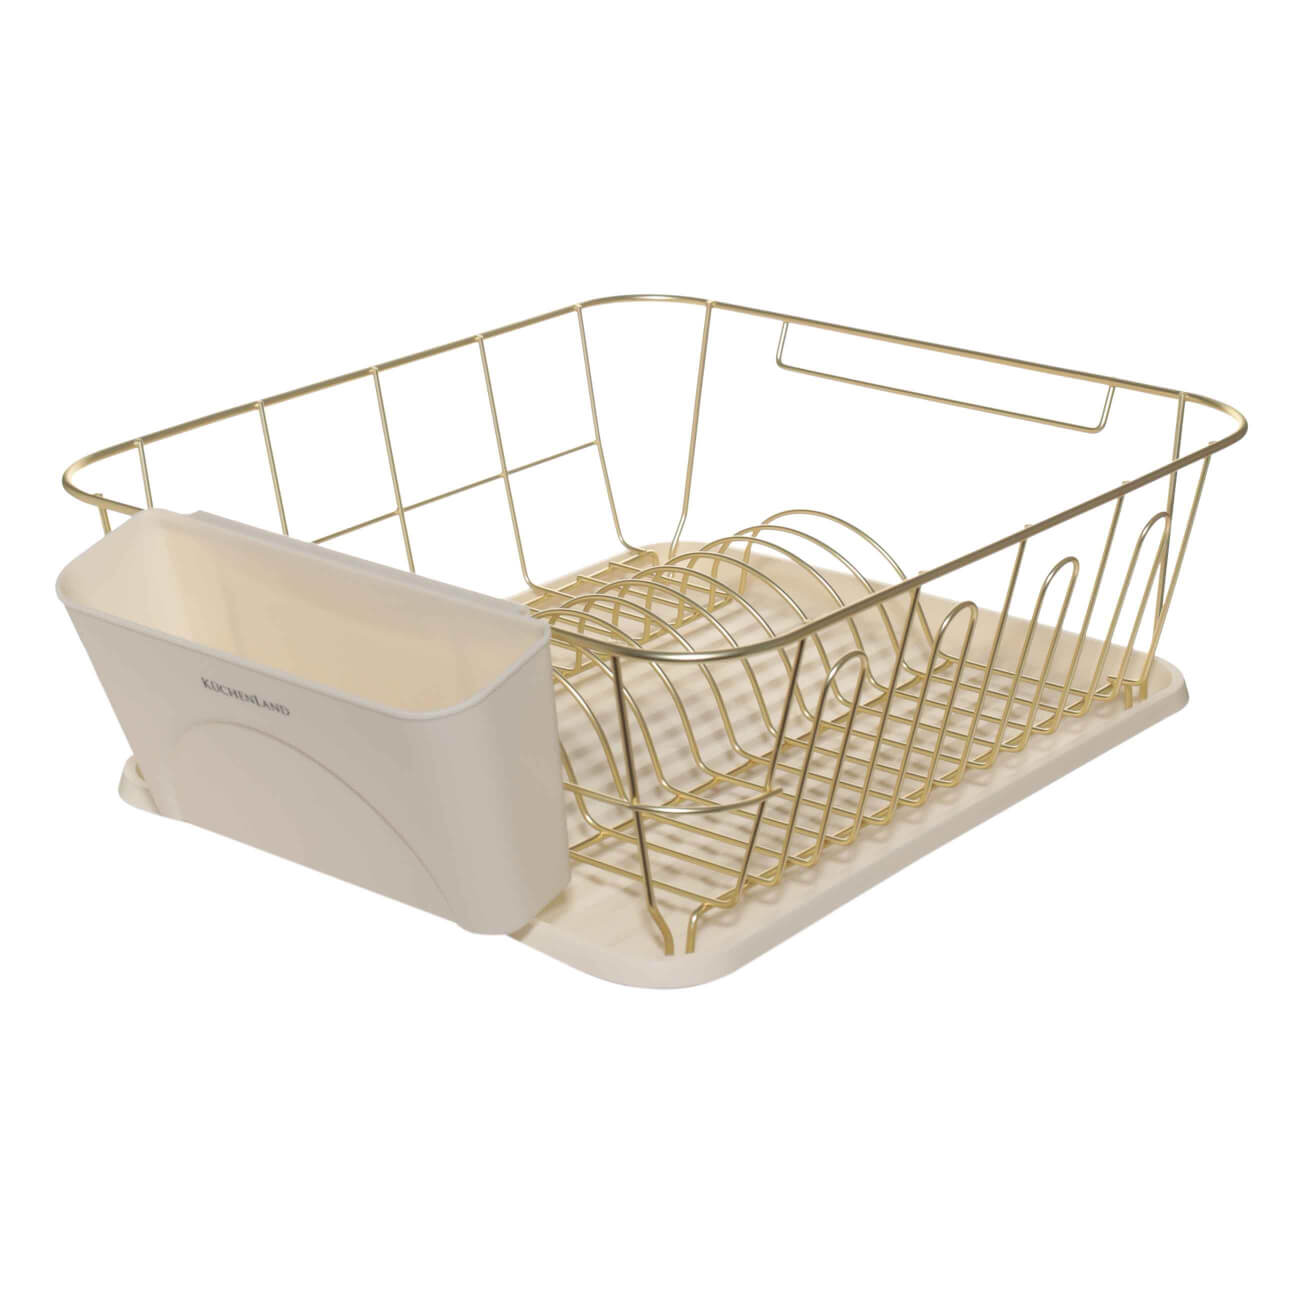 Сушилка для посуды, 37х33 см, с поддоном, металл/пластик, молочно-золотистая, Drying комплект посудосушителей с поддоном для шкафа 80 см 76 5×25 6 см белый